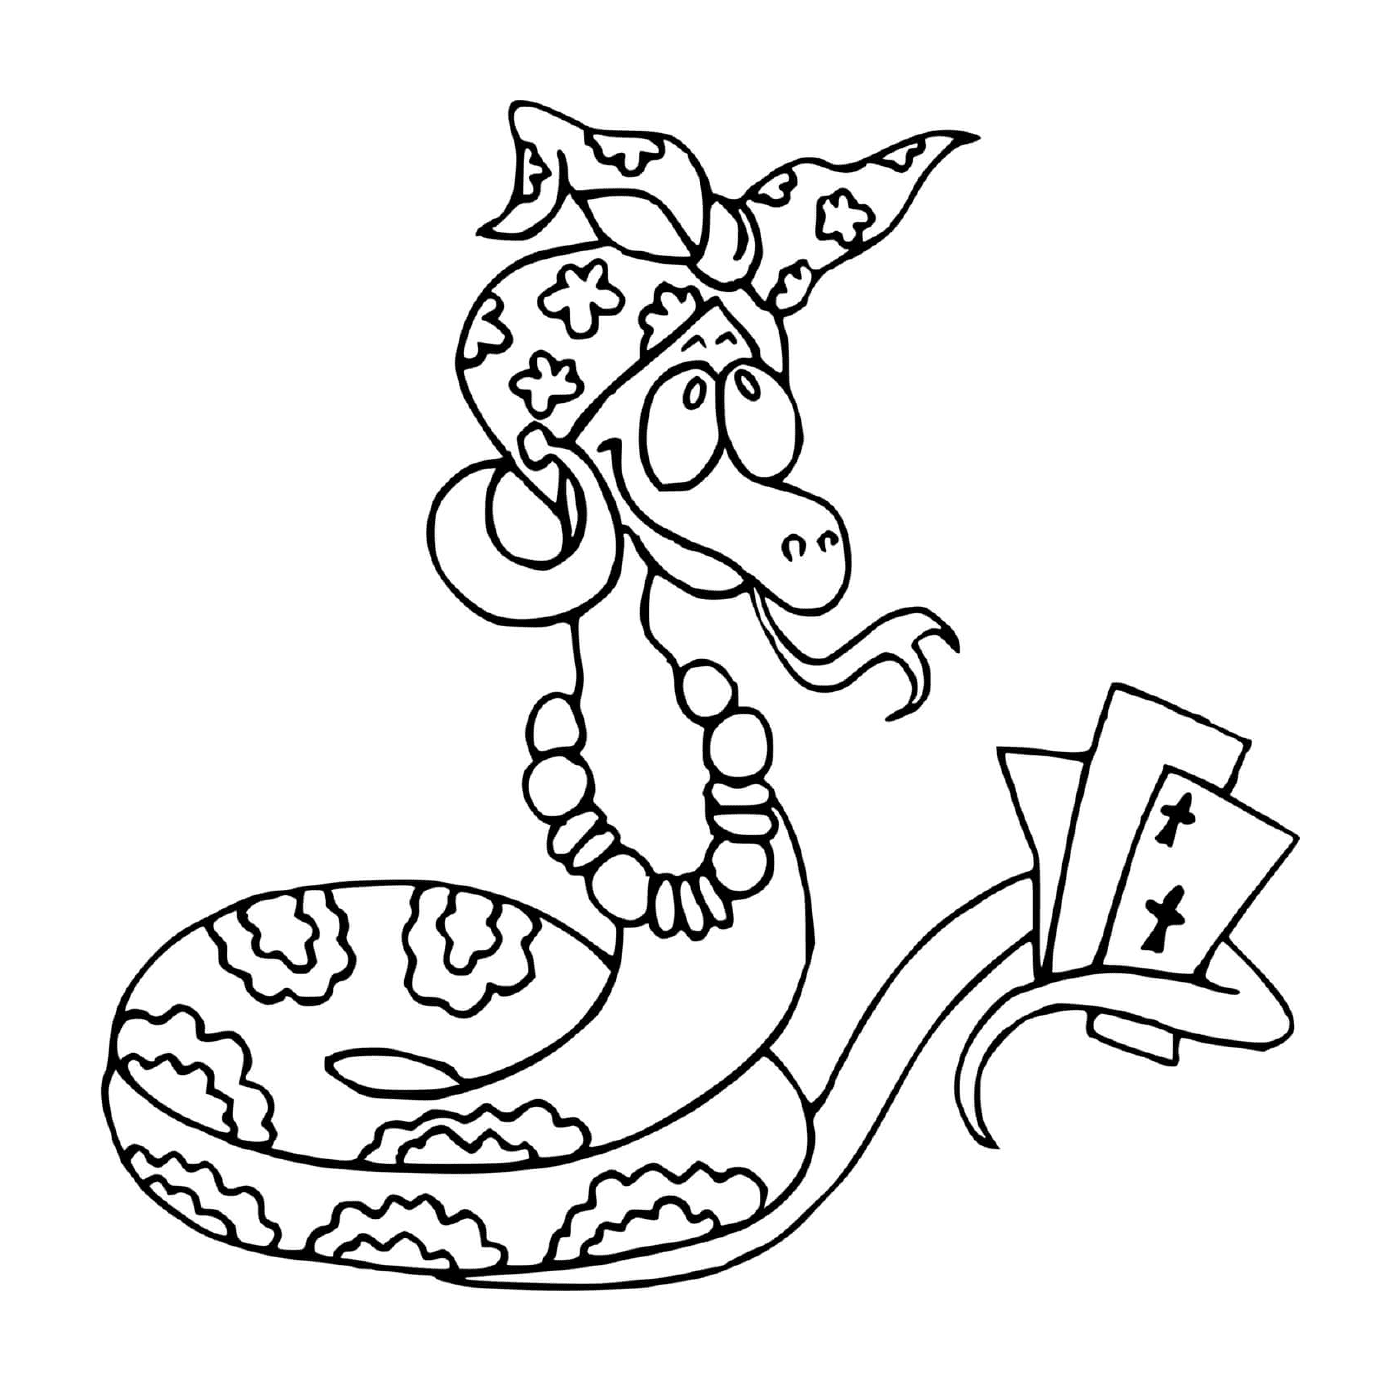  Змея играет в карты 